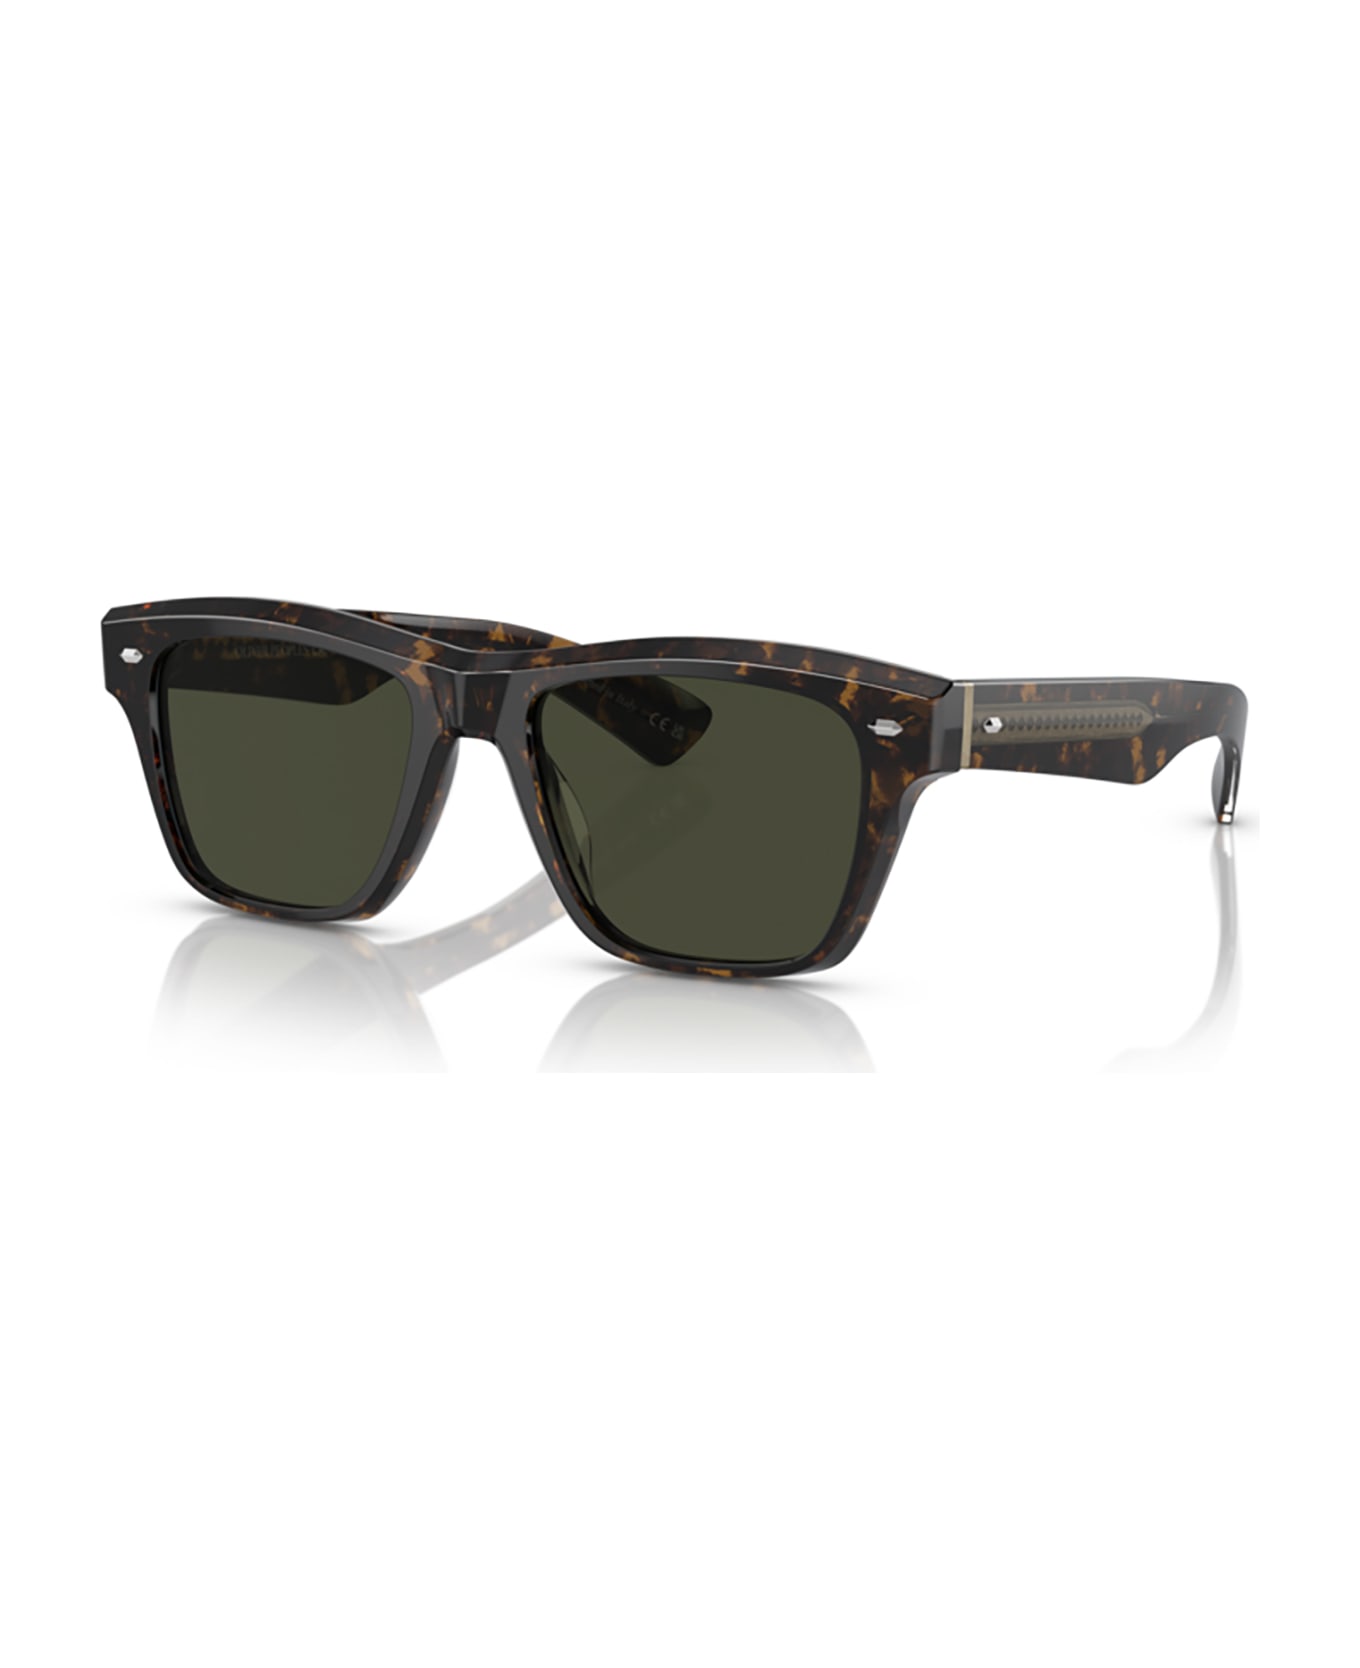 Oliver Peoples Ov5522su Walnut Tortoise Sunglasses - Walnut tortoise サングラス